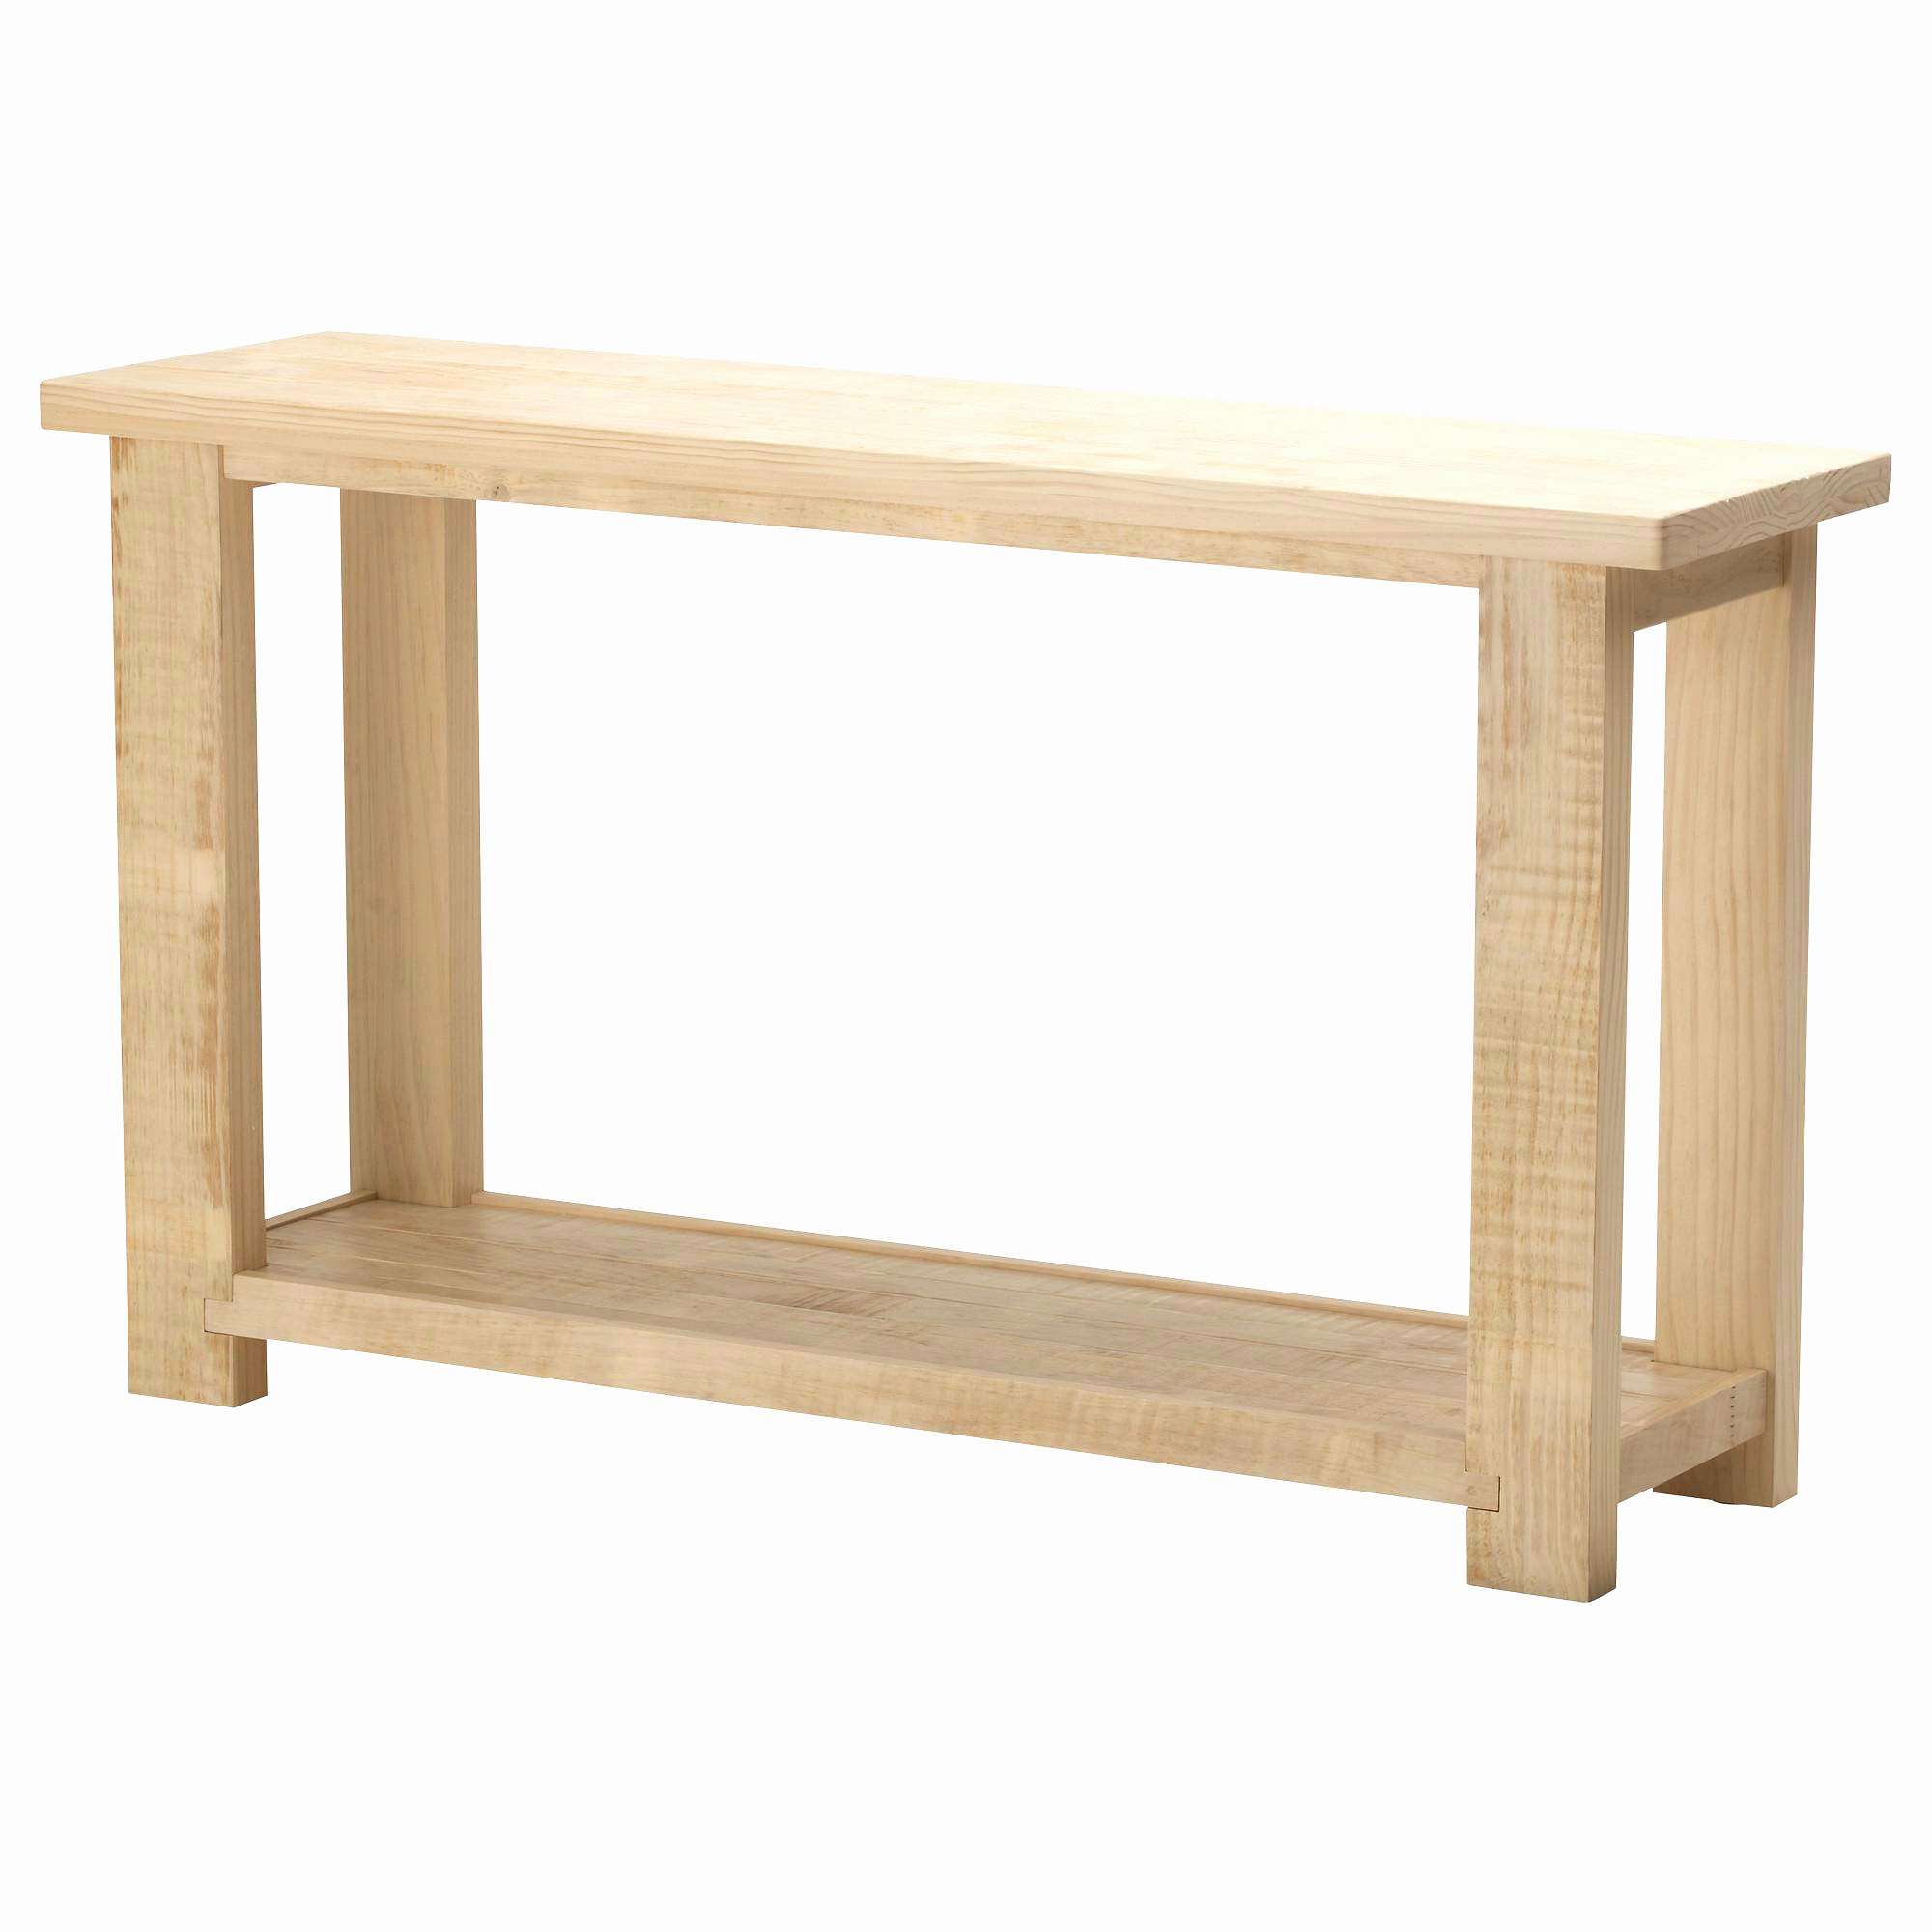 Chaise Basse Jardin Charmant Table Basse Relevable Extensible Ikea Nouveau Tables De